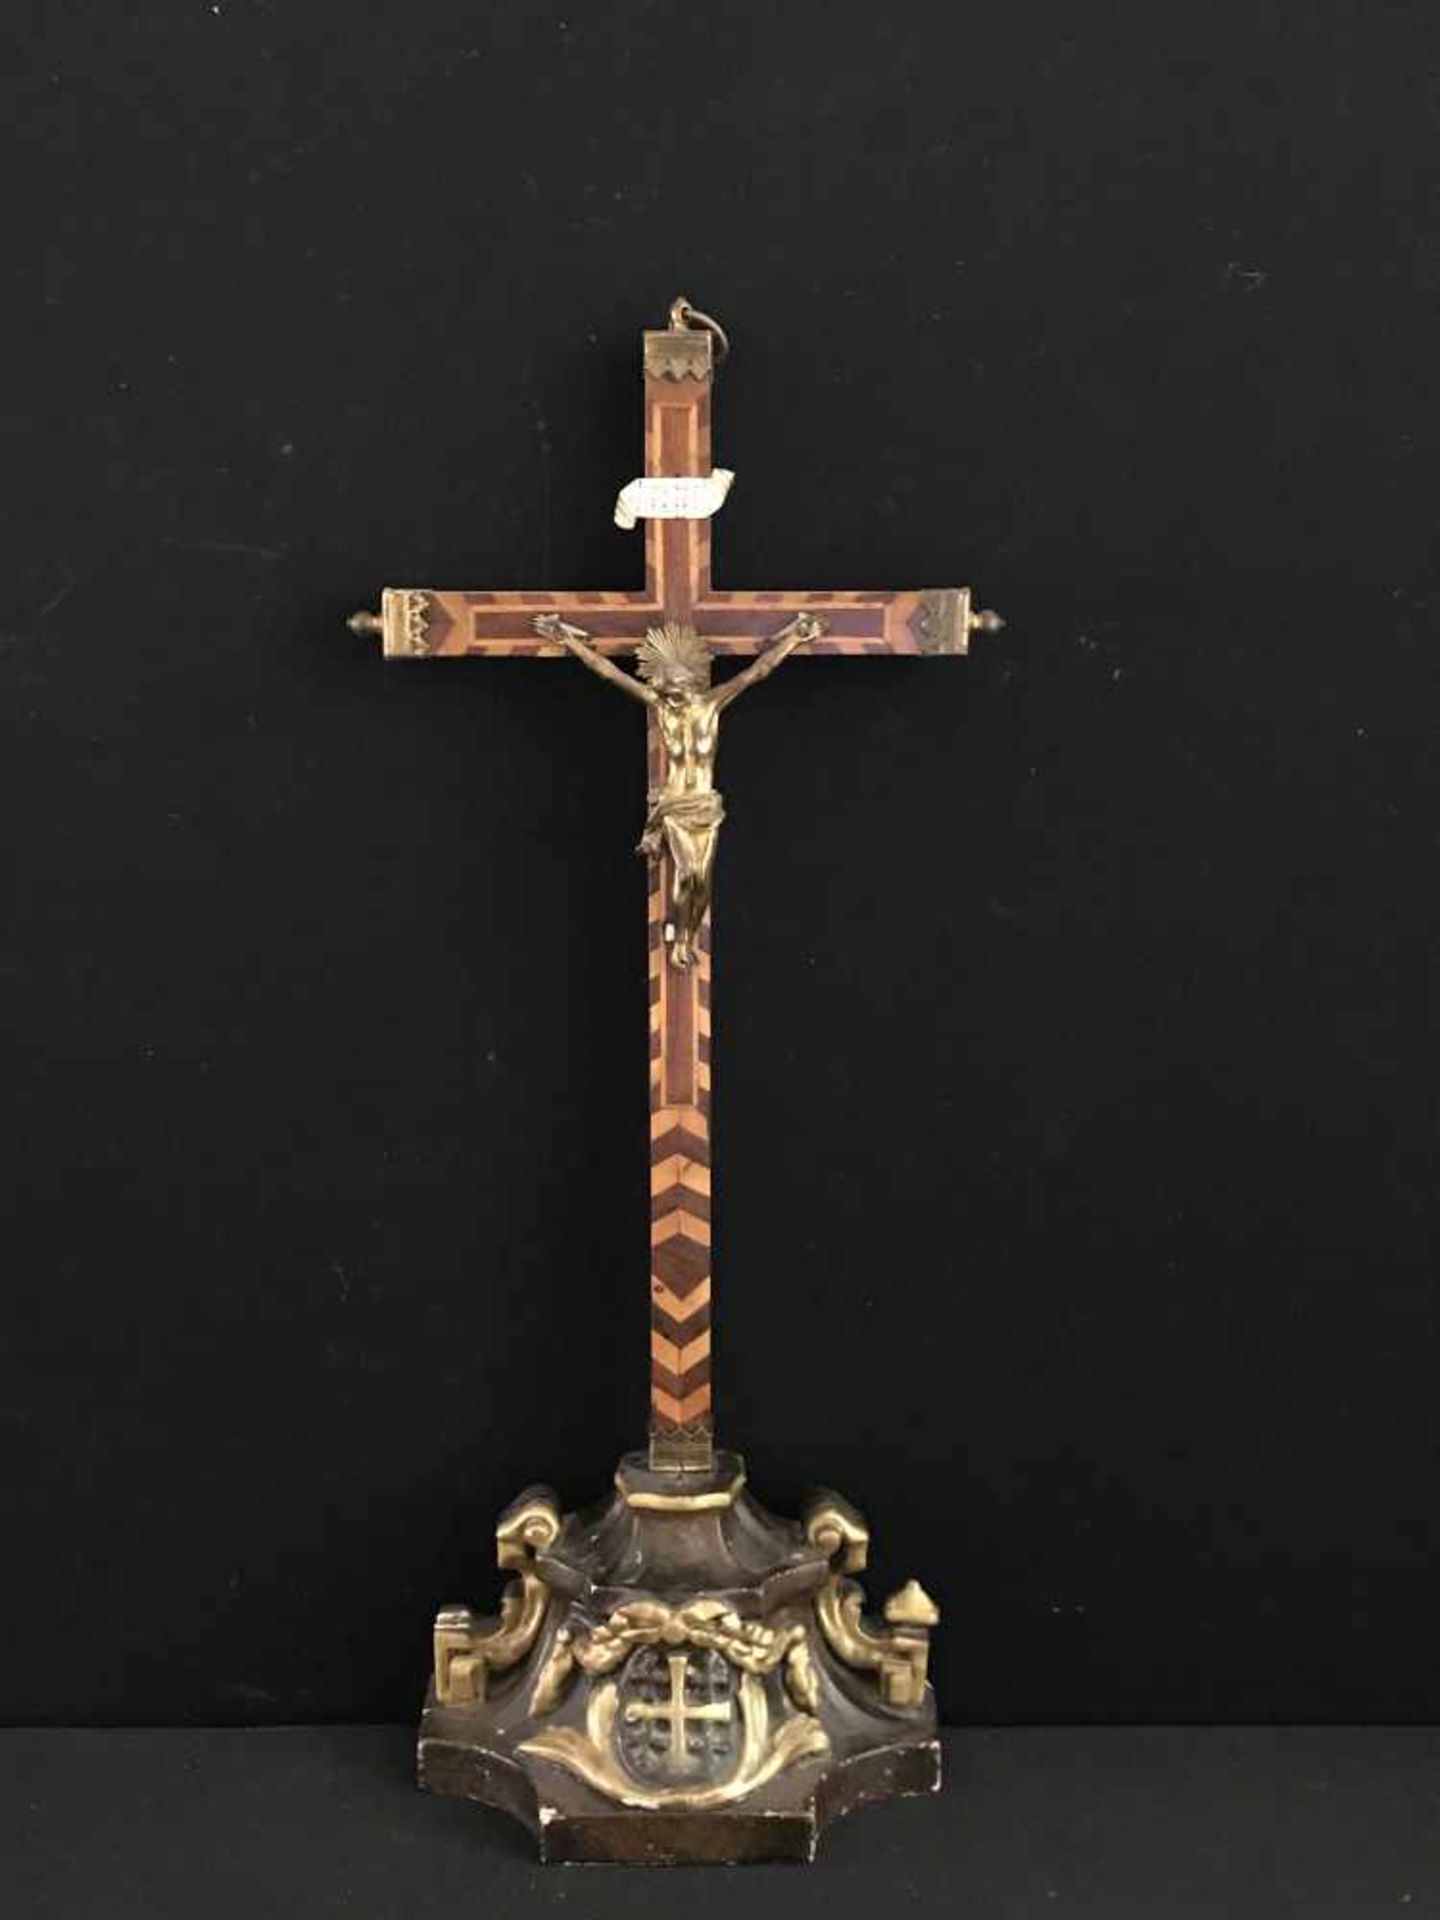 Süddeutsch, 18./19. Jh., Standkreuz bzw. Kruzifix, Holz, intarsiert, farbig gefasst und teils